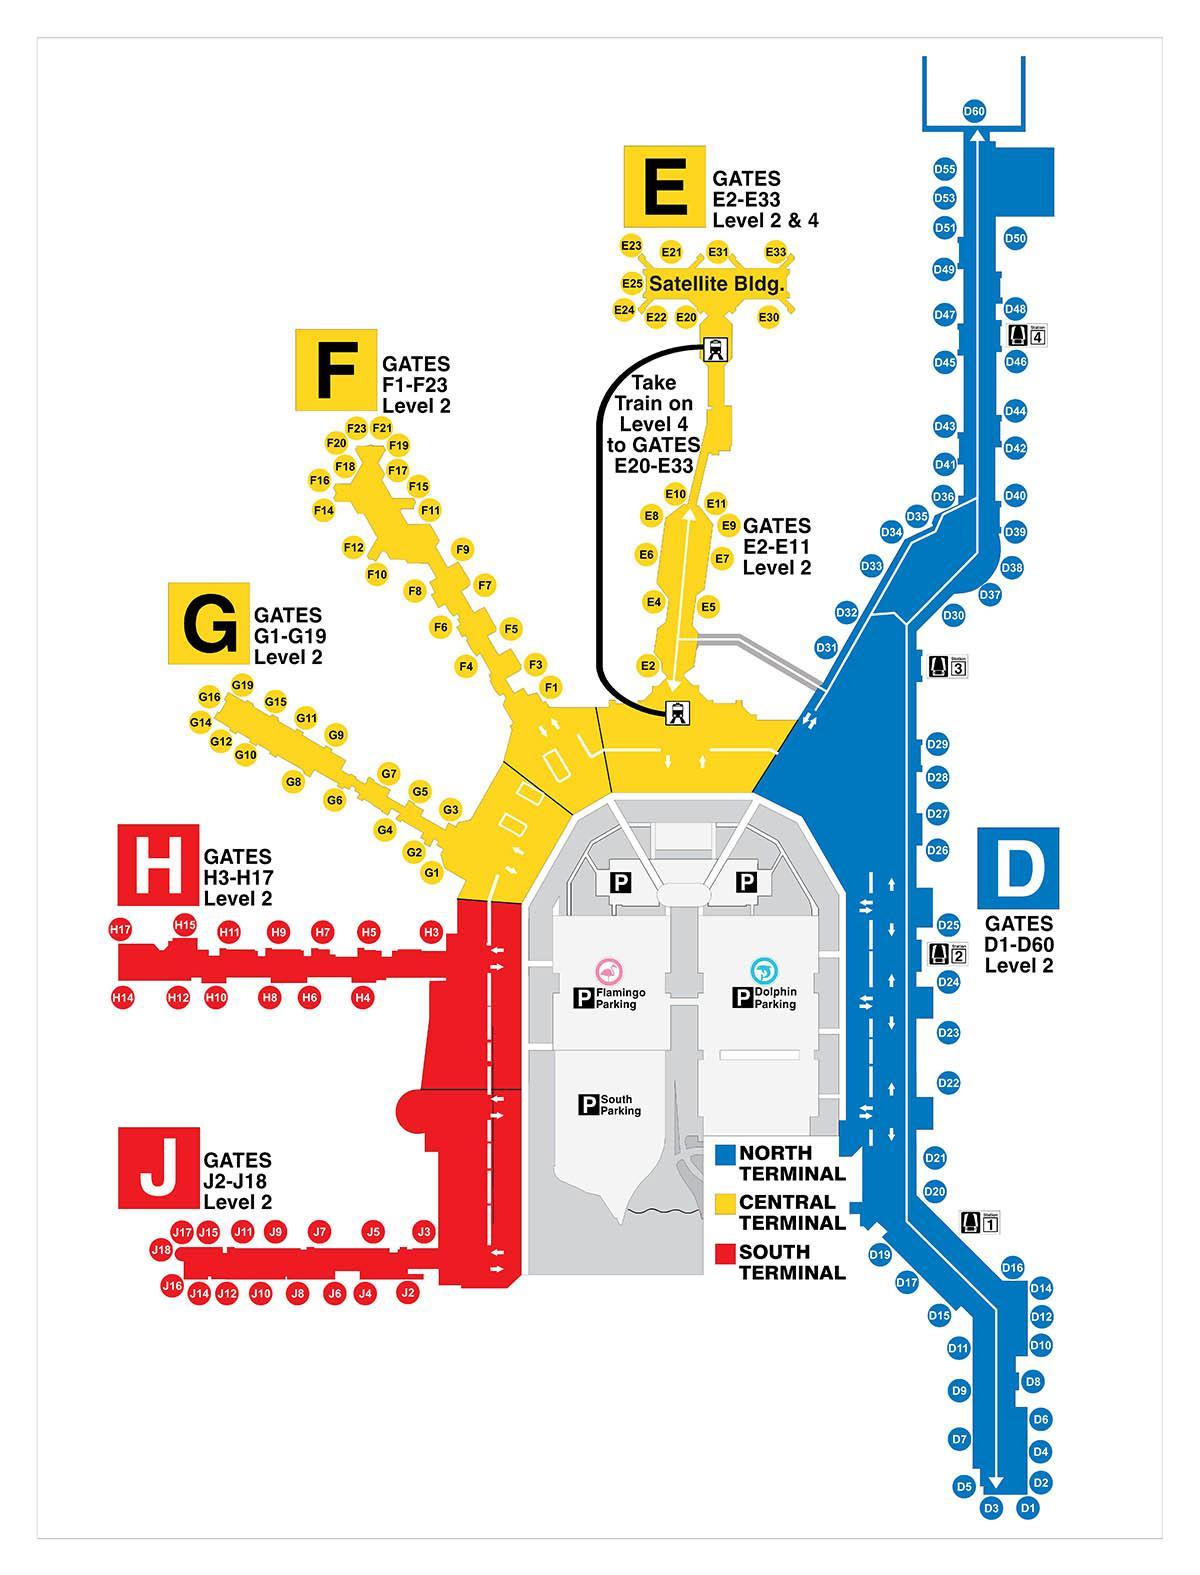 Mappa del terminal dell'aeroporto di Miami